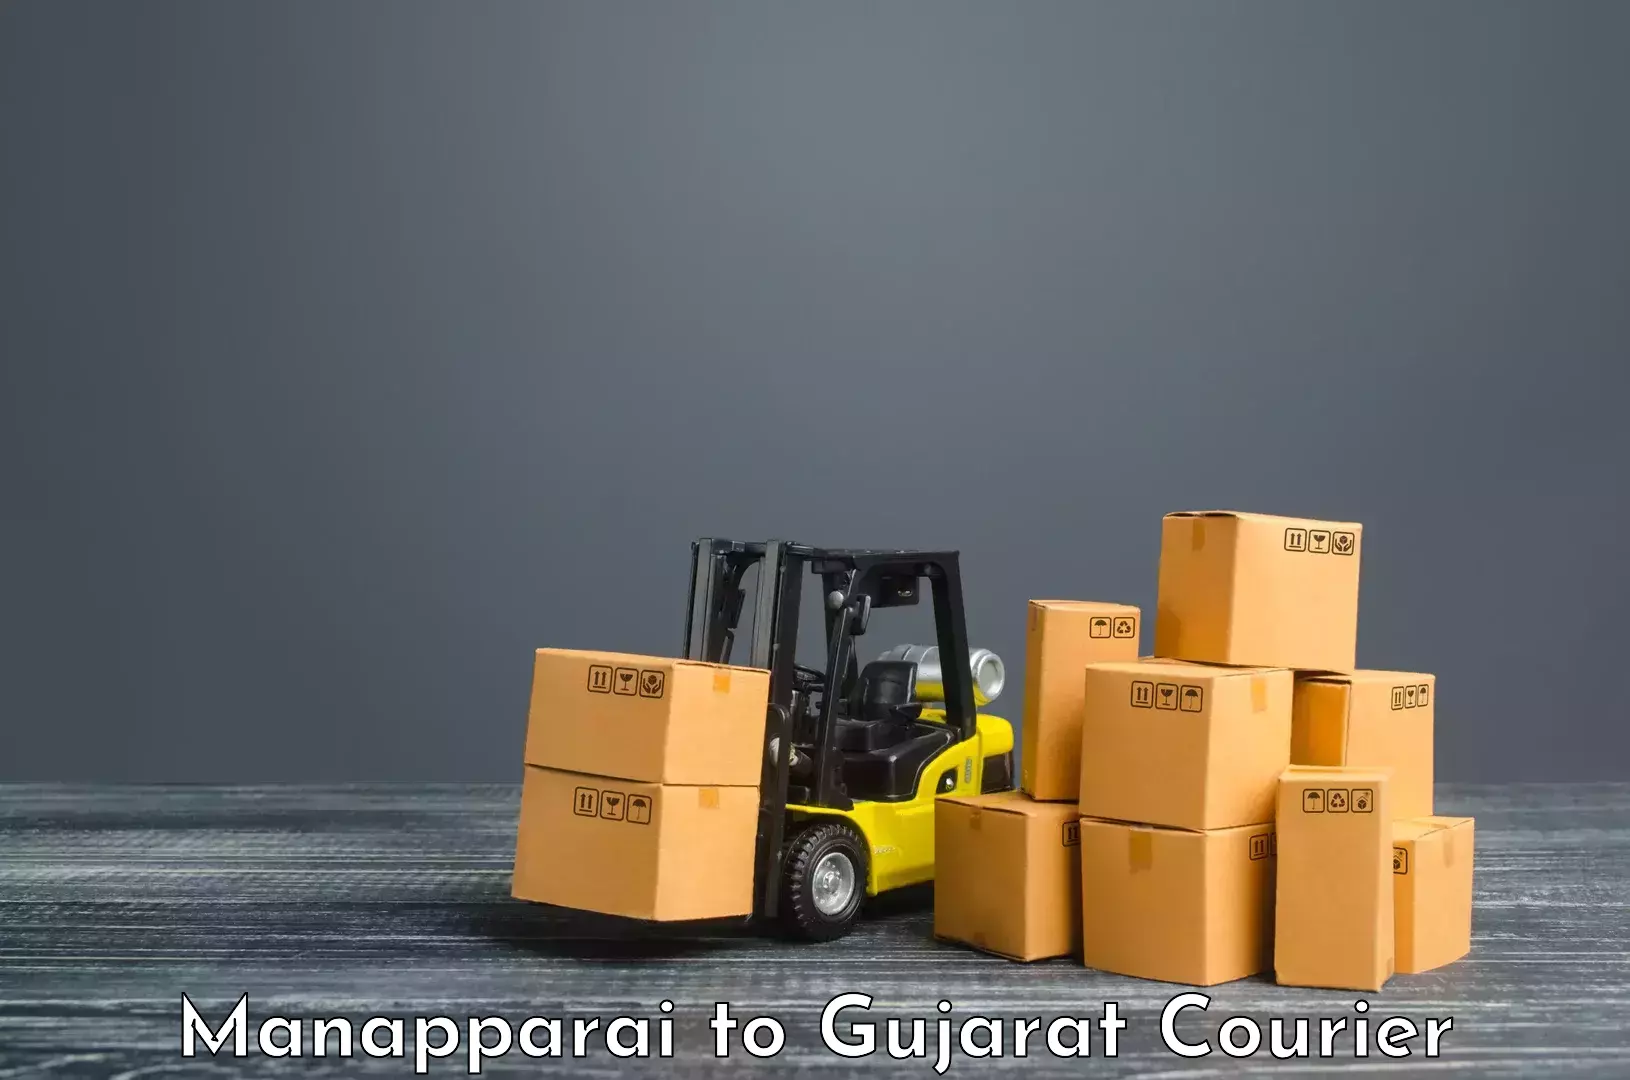 Digital shipping tools Manapparai to Jamnagar